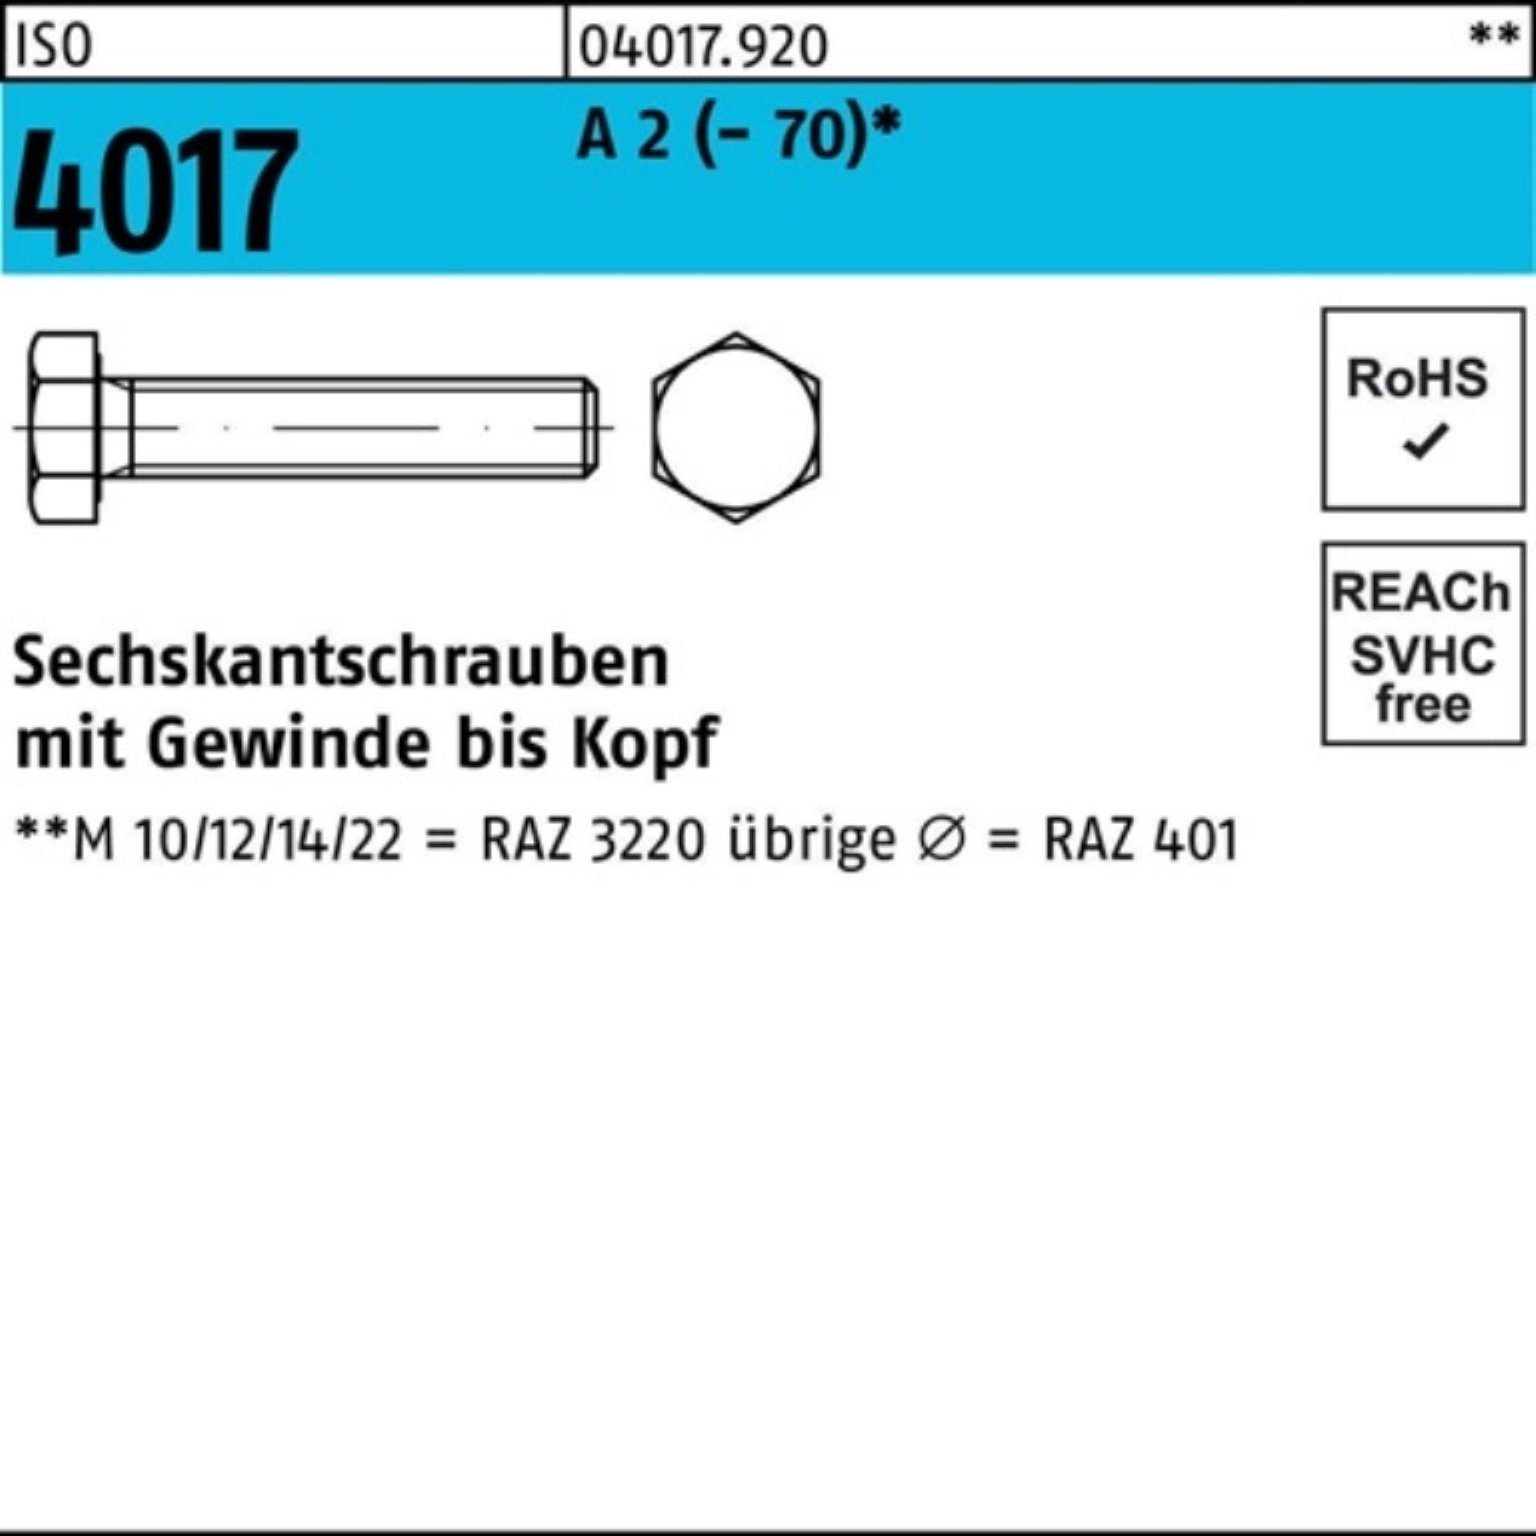 Sechskantschraube Sechskantschraube (70) ISO 100er Stück M18x Bufab 2 Pack 4017 A 25 VG 90